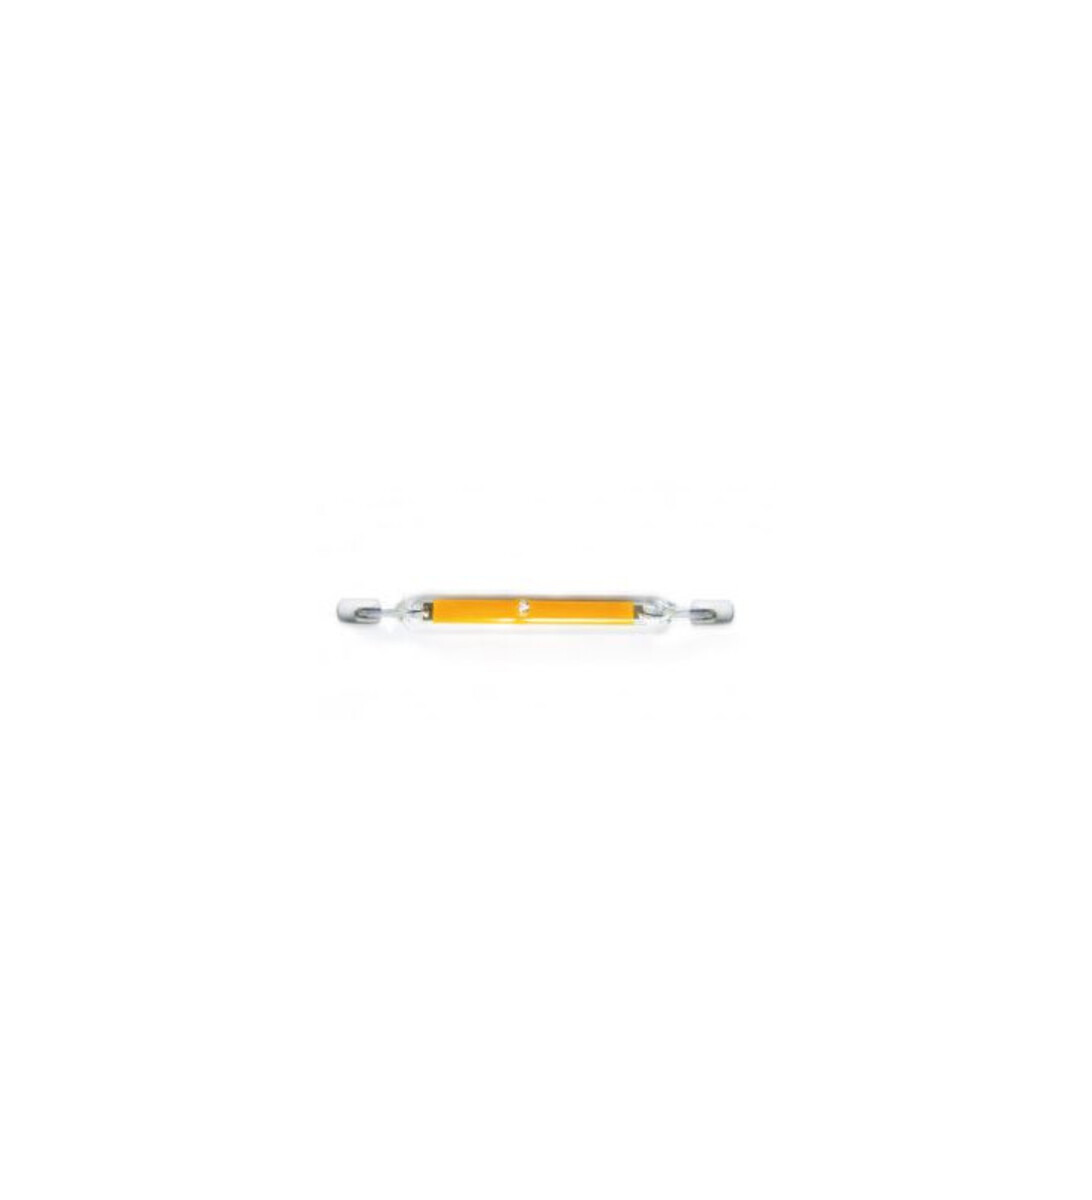 Ampoule crayon led 4w - 2700k - culot r7s